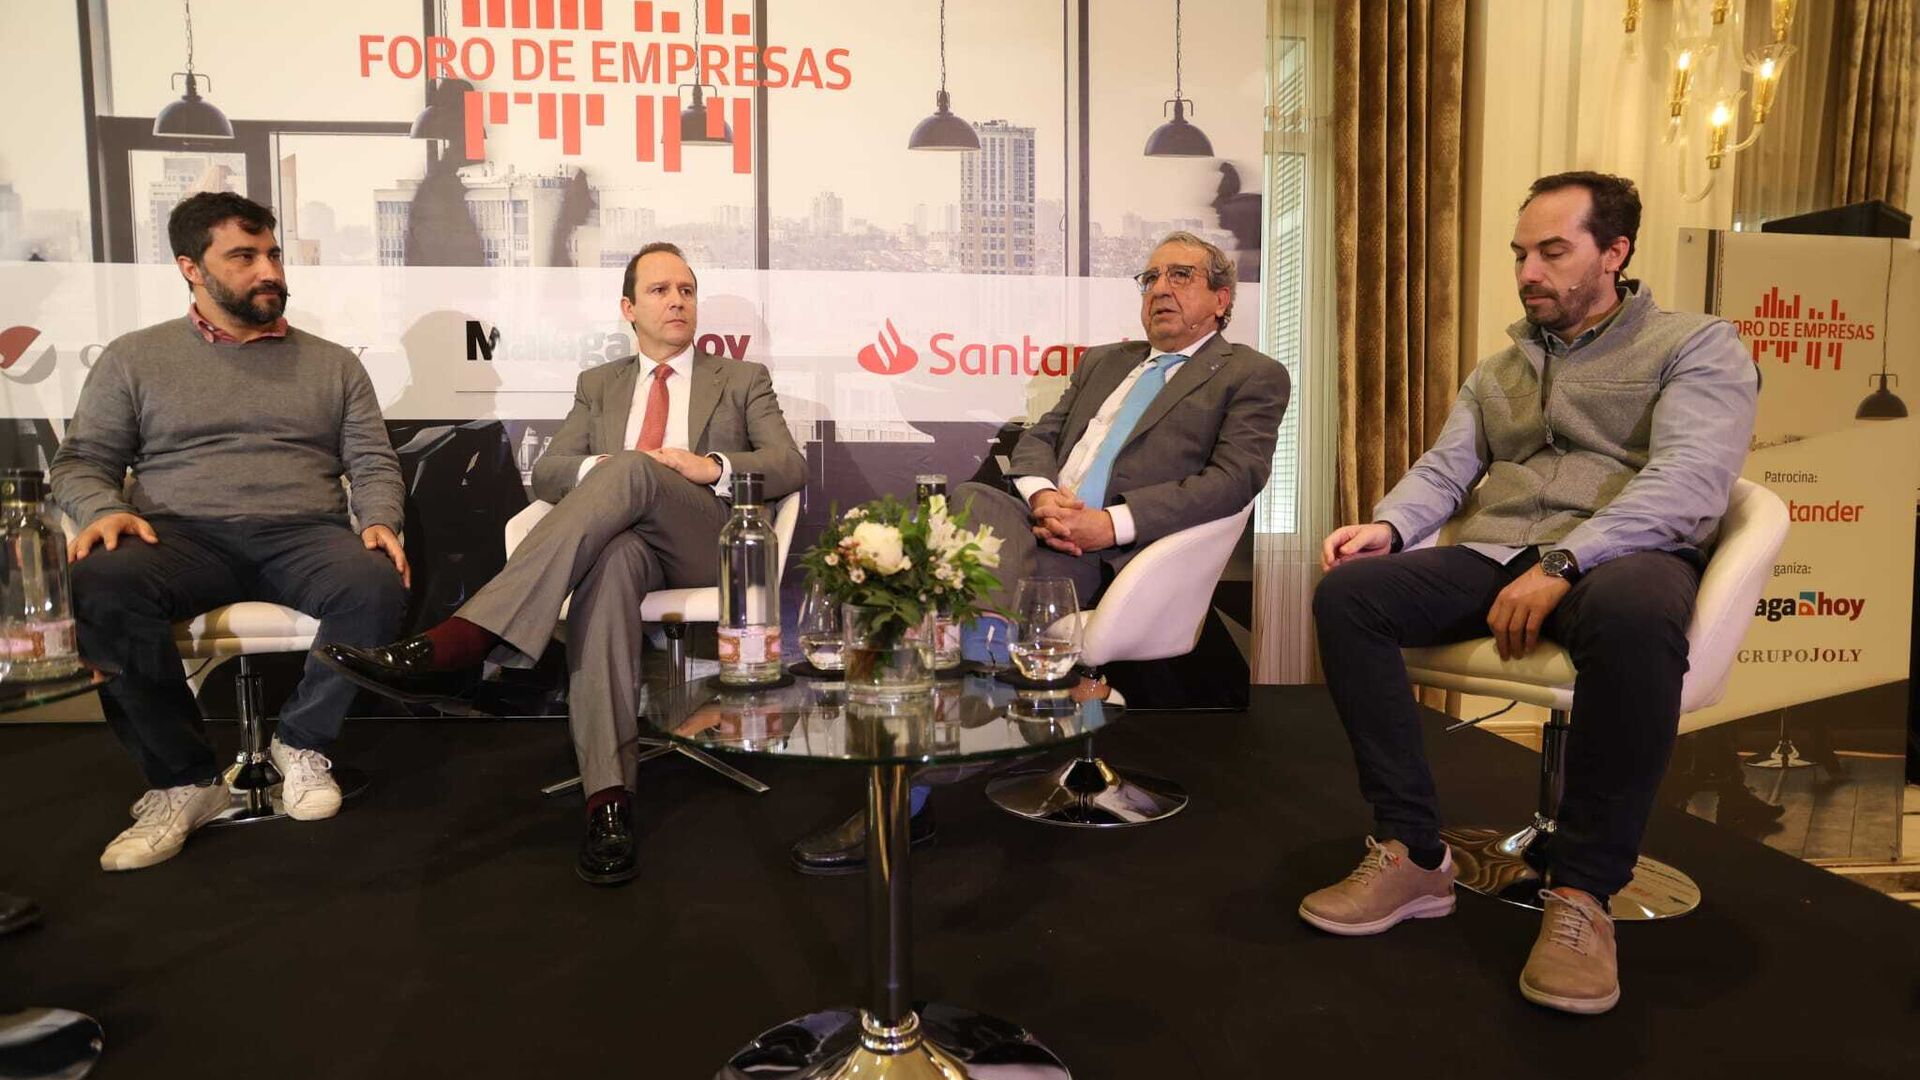 El Foro de Empresas del Grupo Joly y el Banco Santander, en fotos